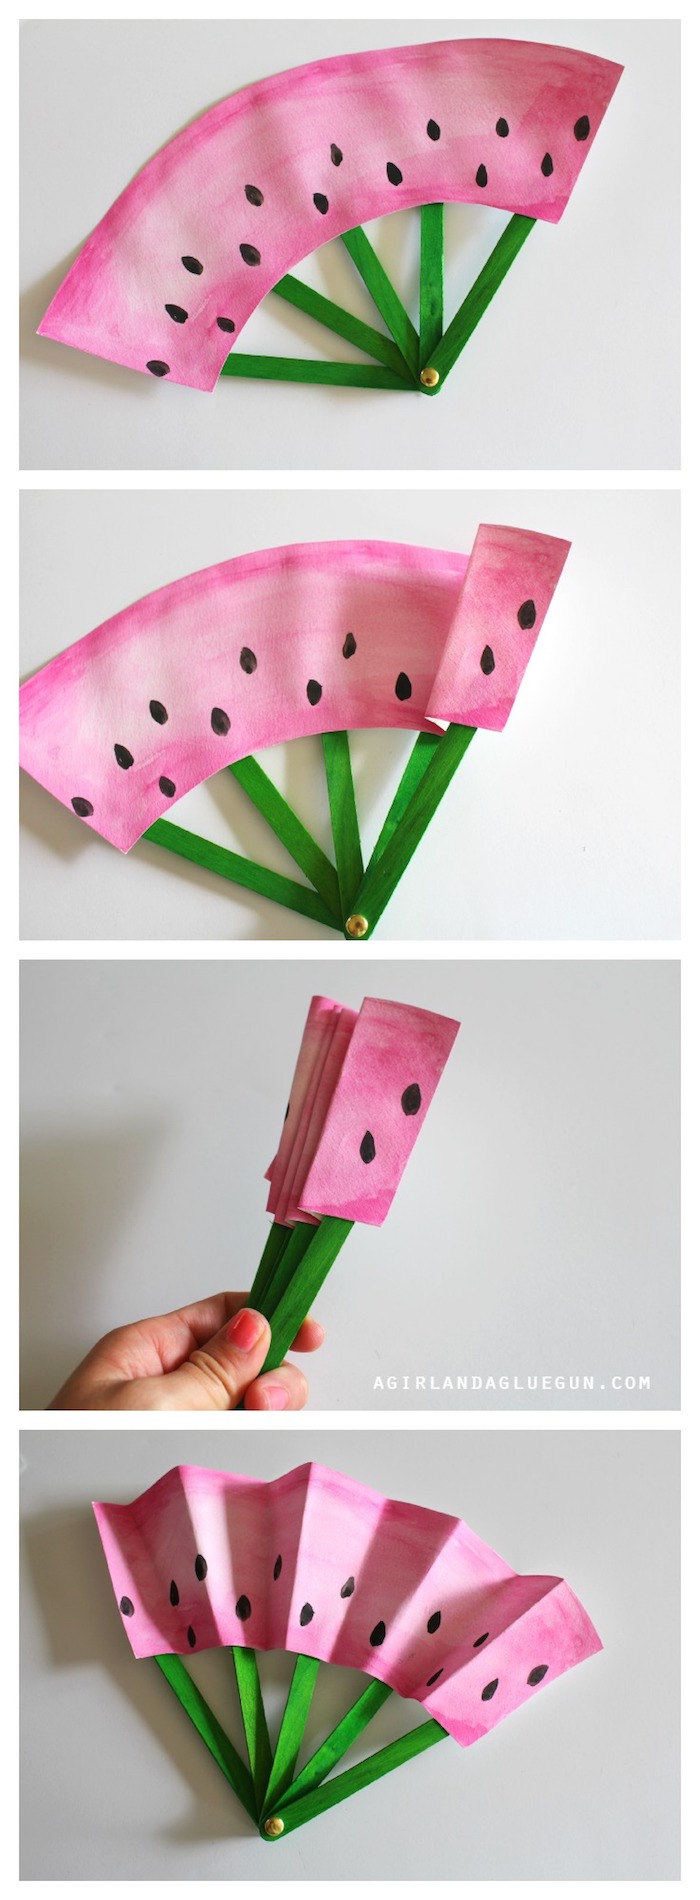 activité manuelle primaire, eventail japonais en papier et batonnets de glace et papier repeint en rose avec touches de peinture imitations pépins